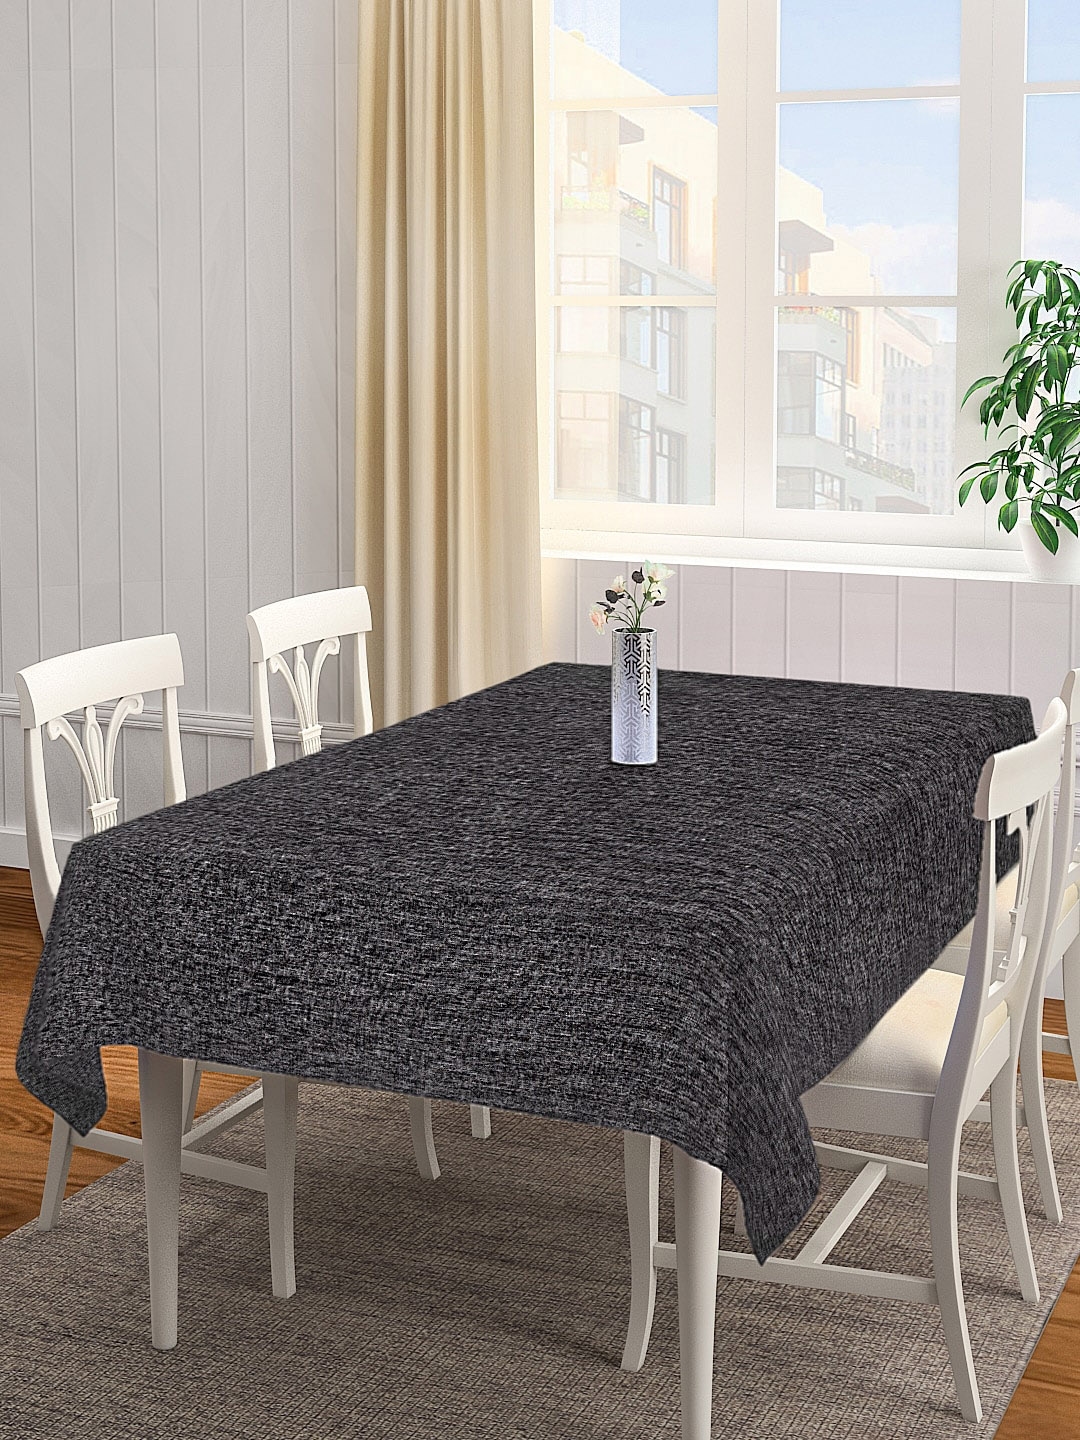 KLOTTHE Black Woven Design 6 Seater Rectangular Table Cover